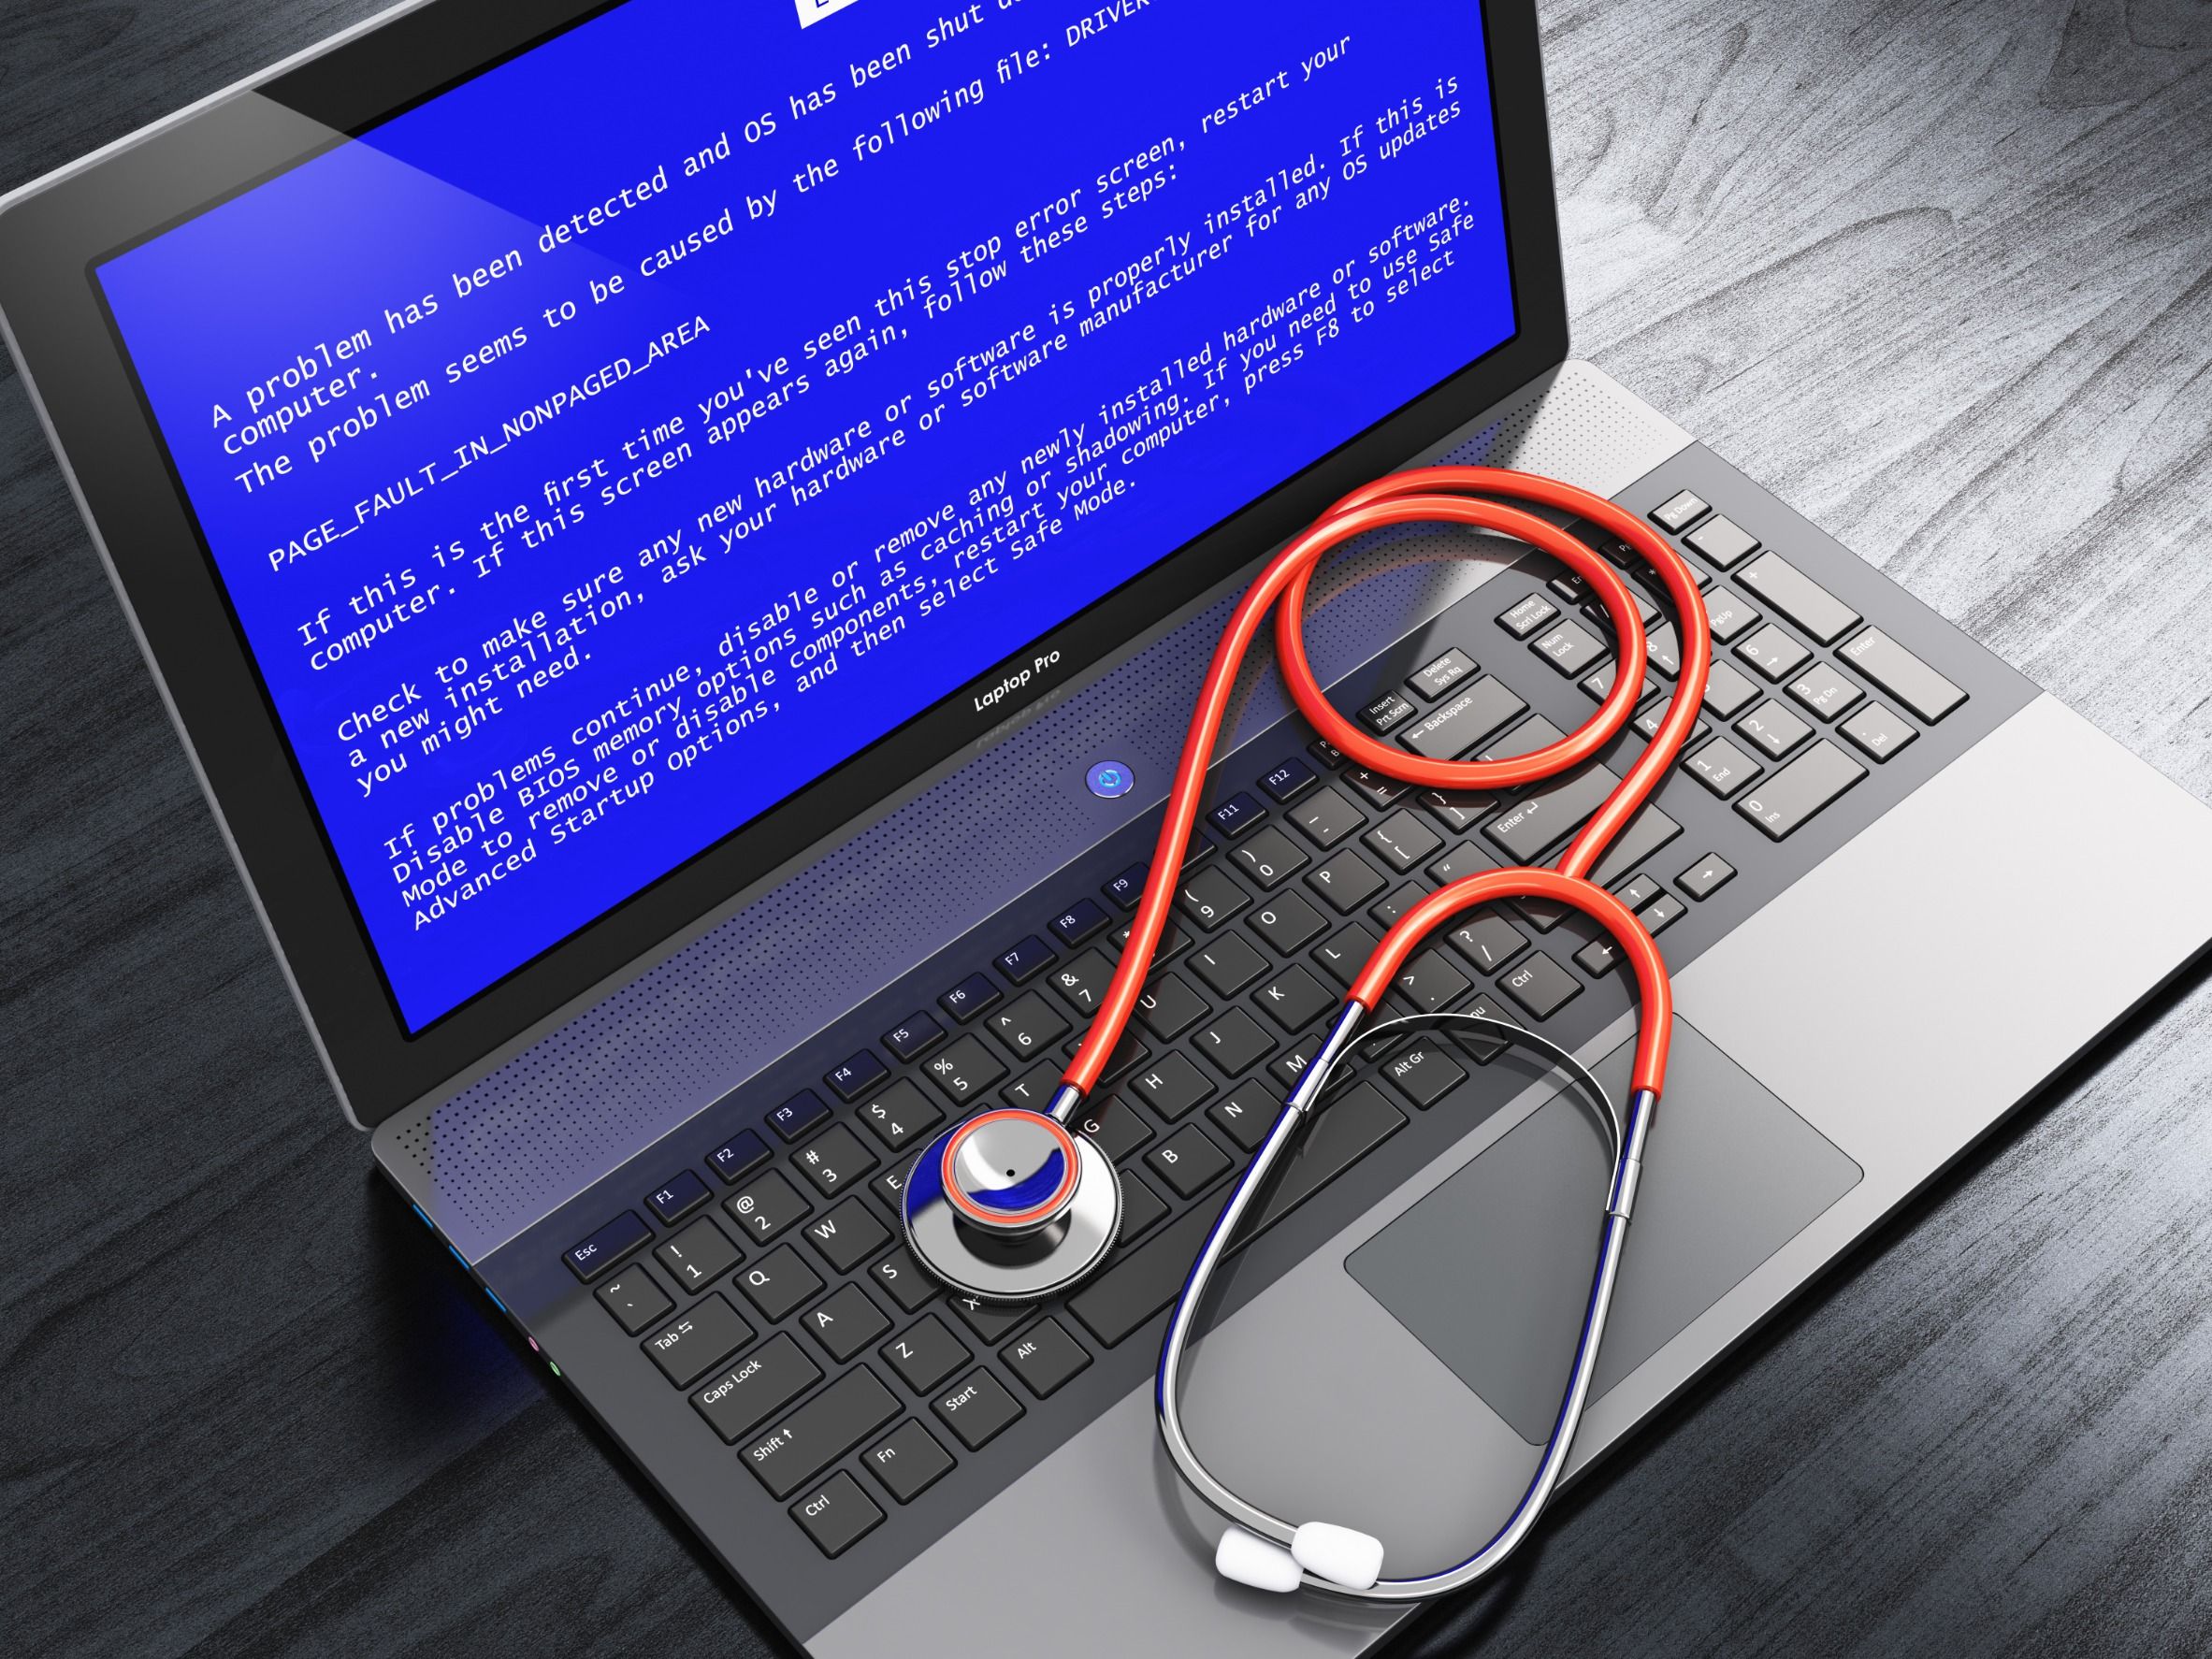 Change Healthcare admite que pagó el rescate exigido por el grupo de ransomware BlackCat